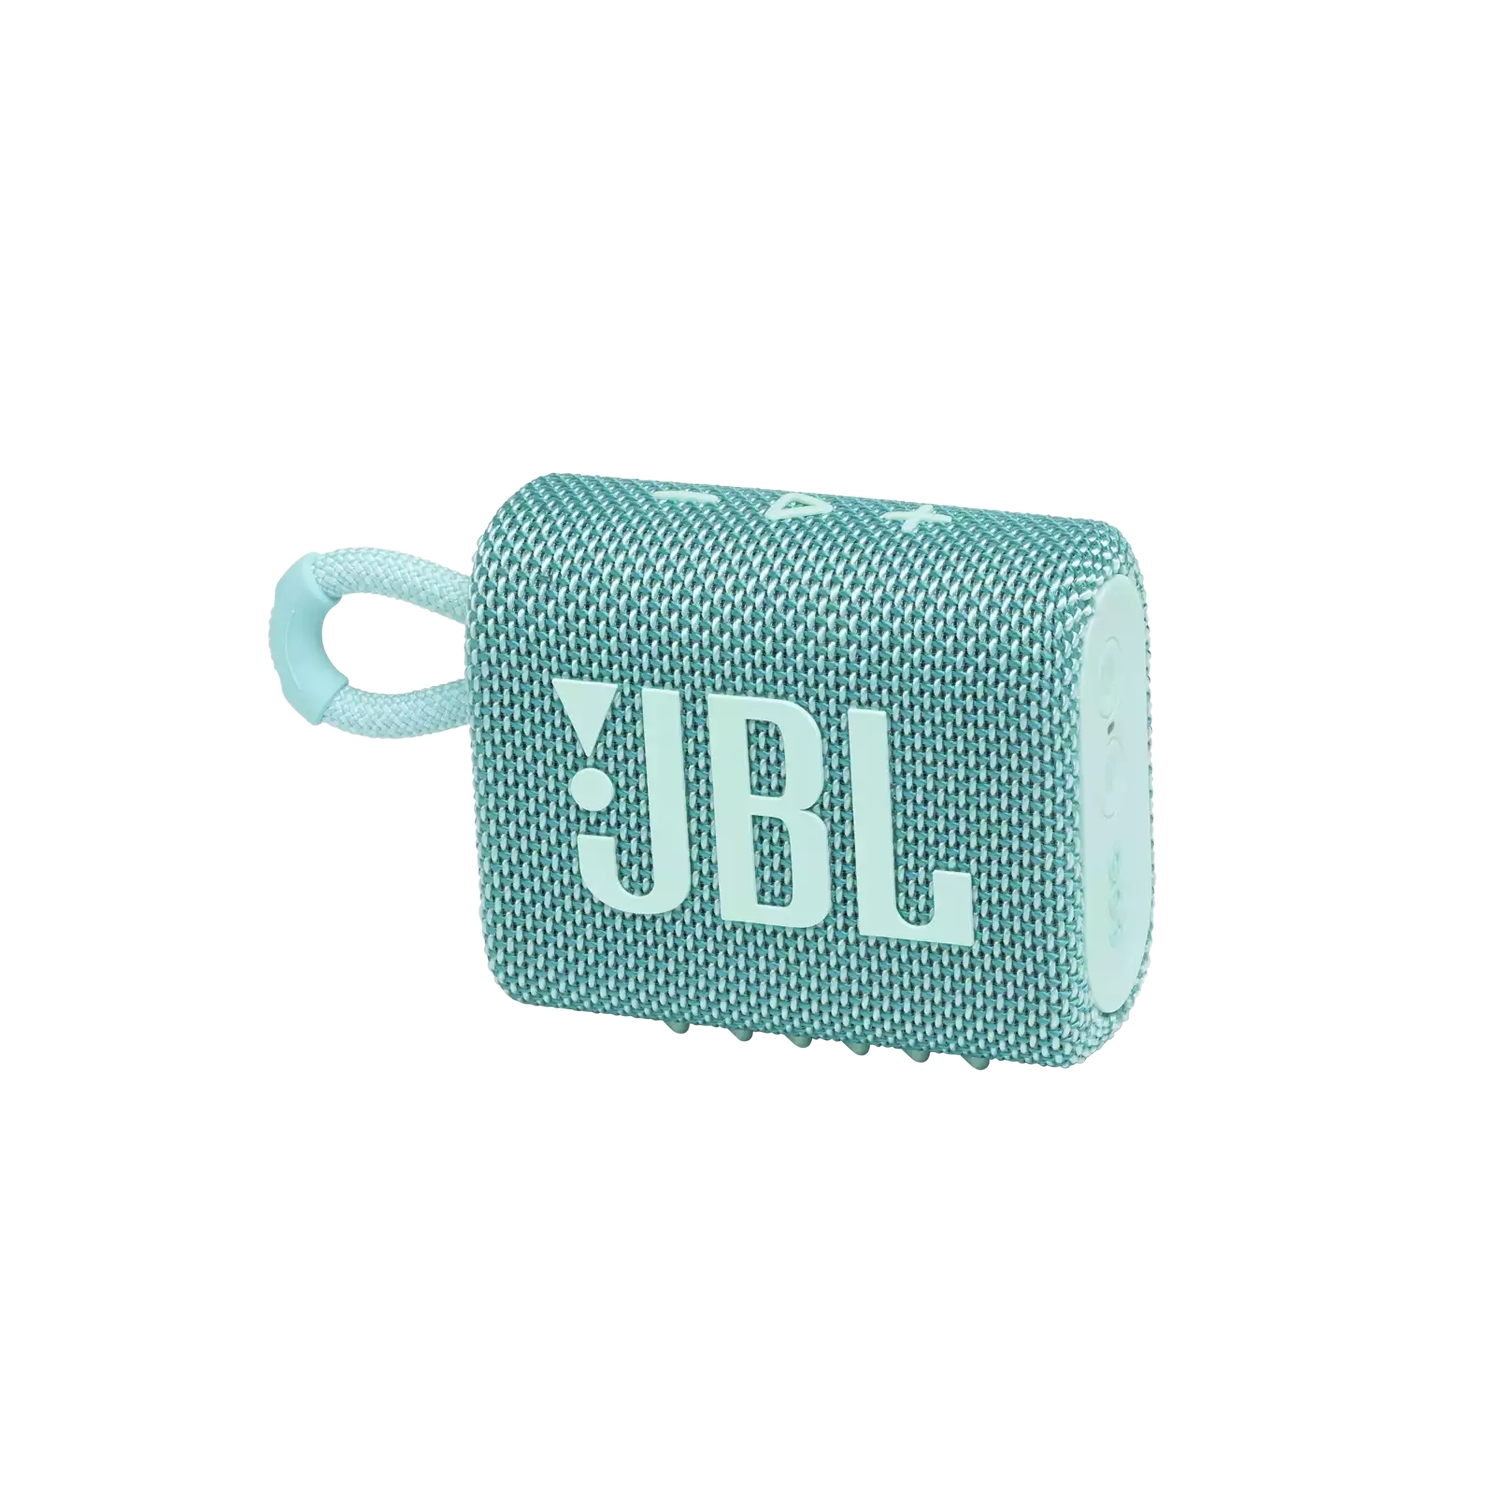 Портативная акустика JBL GO 3 бирюзовая портативная акустика jbl go 3 бирюзовая